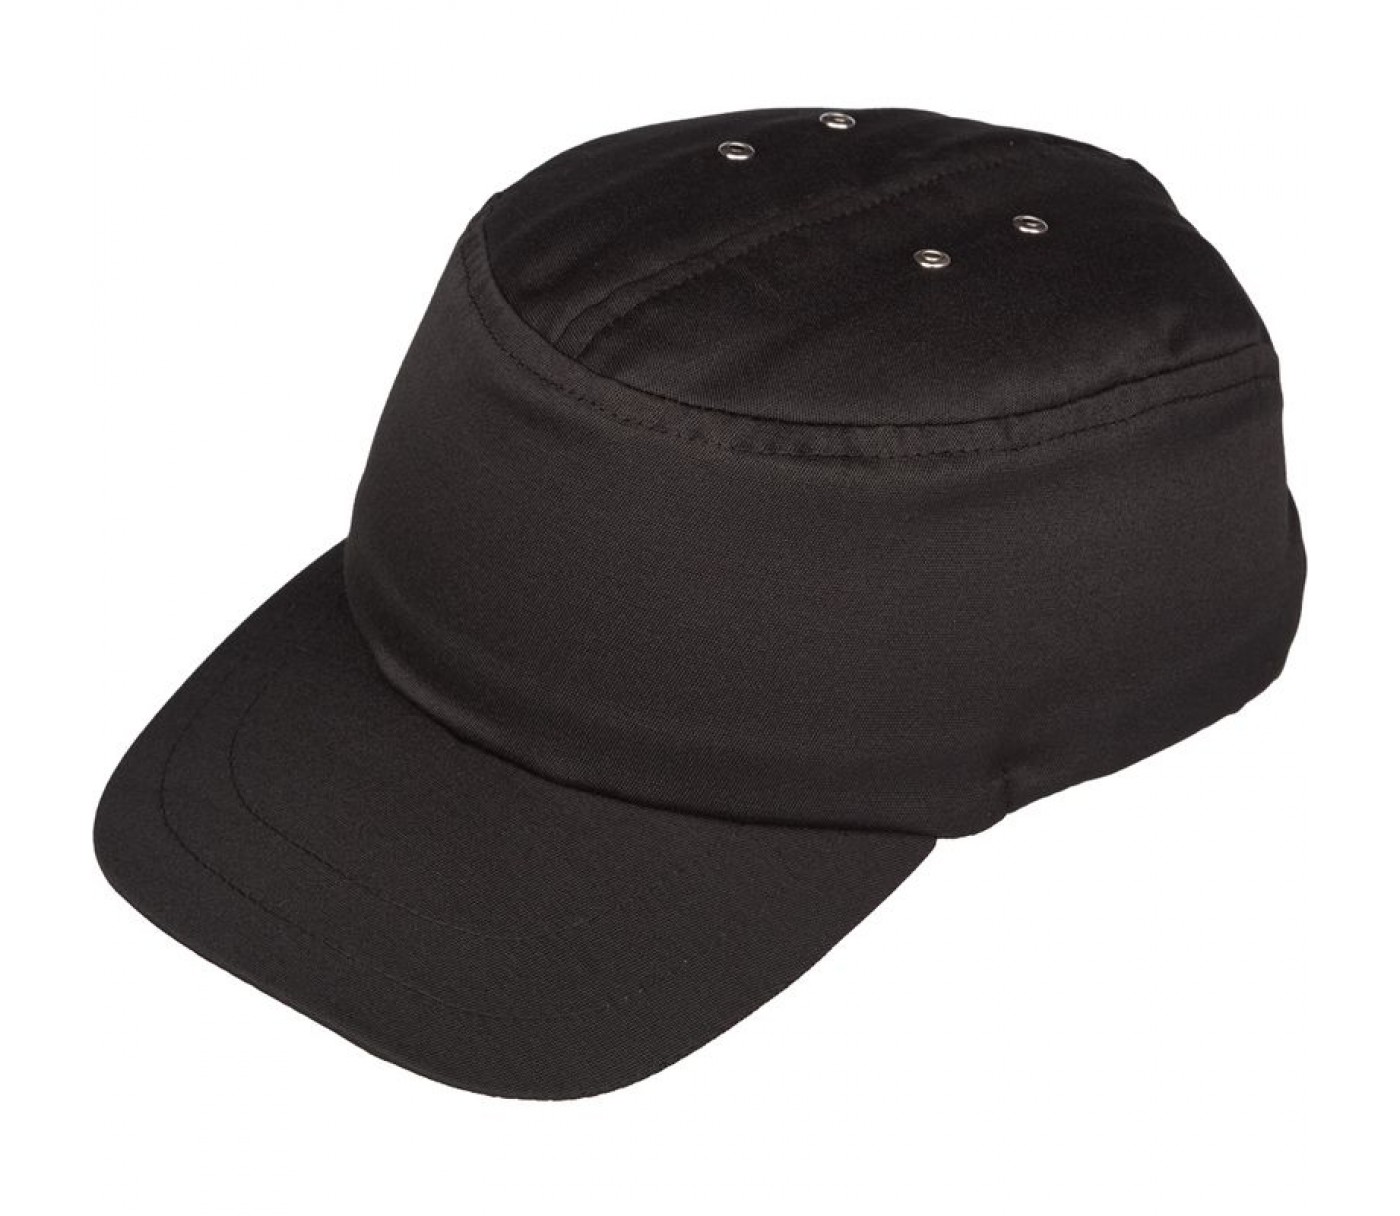 Каскетка защитная купить. Каскетка защитная Эталон 2. Каскетка защитная СОМЗ RZ Favorit cap черная (95520). Каскетка защитная RZ Biot® cap черная (92220). Каскетка защитная RZ Favorit cap синяя.